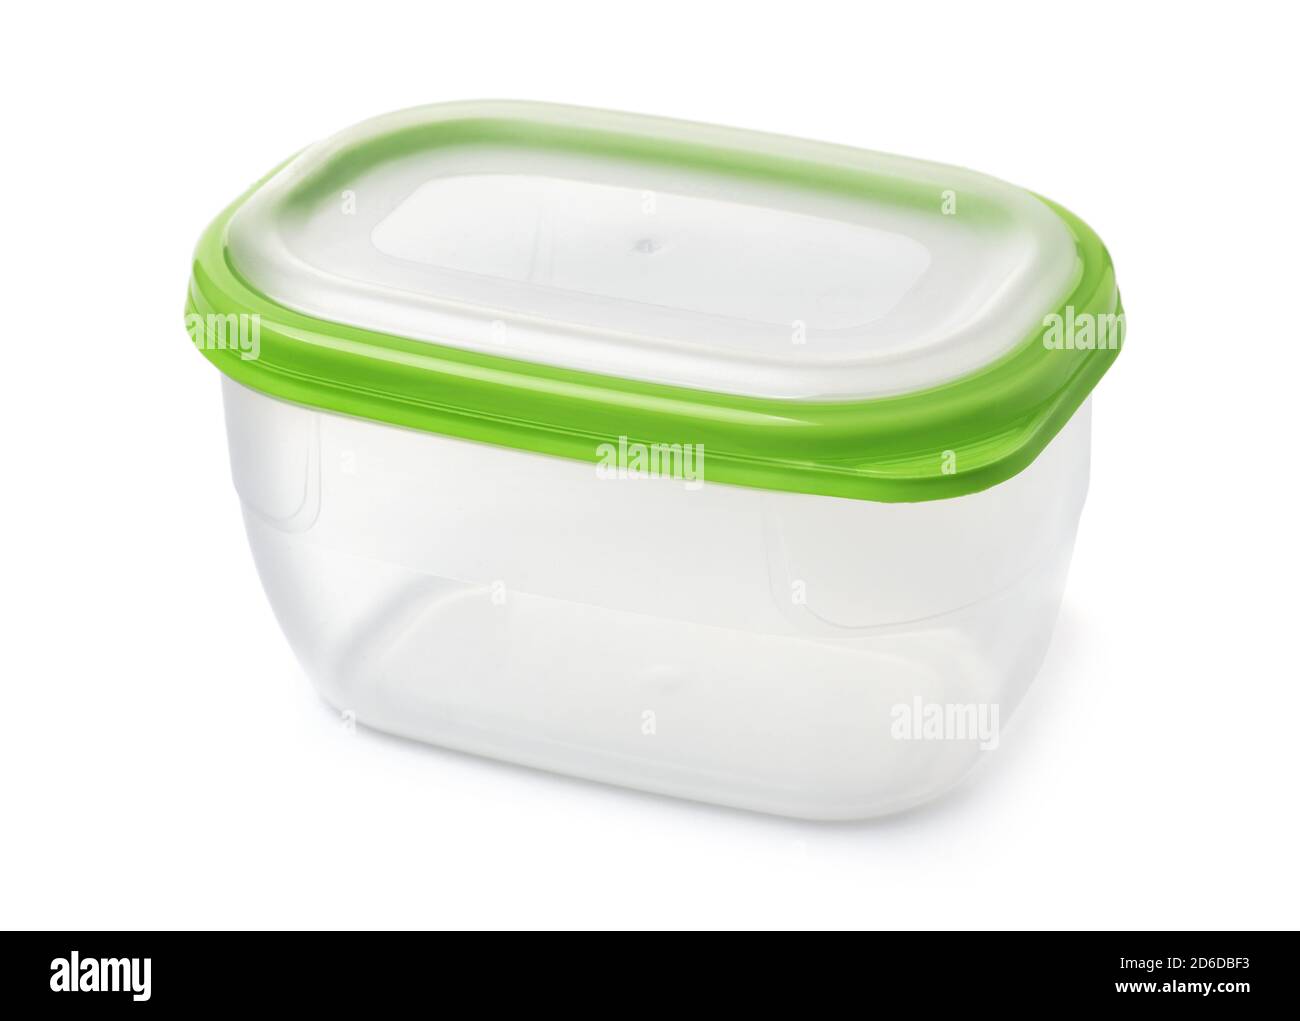 Aufbewahrungsbehälter für Lebensmittel aus Kunststoff mit grünem Deckel, isoliert auf weiß Stockfoto